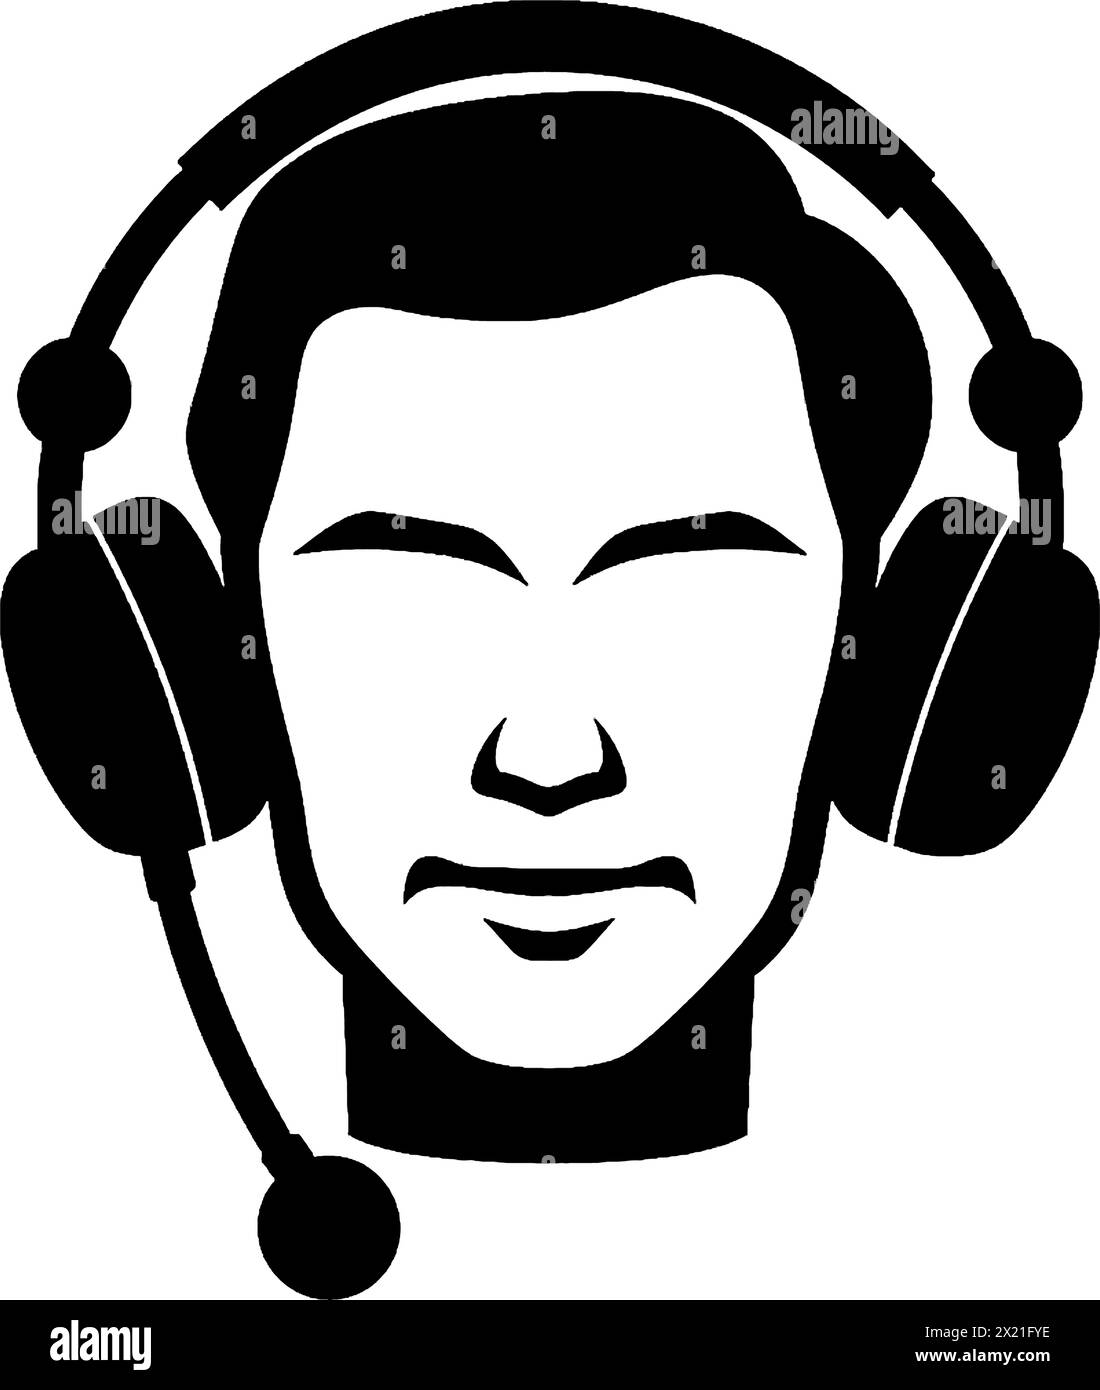 Illustration vectorielle de la tête d'un homme dans des écouteurs en silhouette noire sur un fond blanc propre, capturant les formes gracieuses de ce vecteur. Illustration de Vecteur